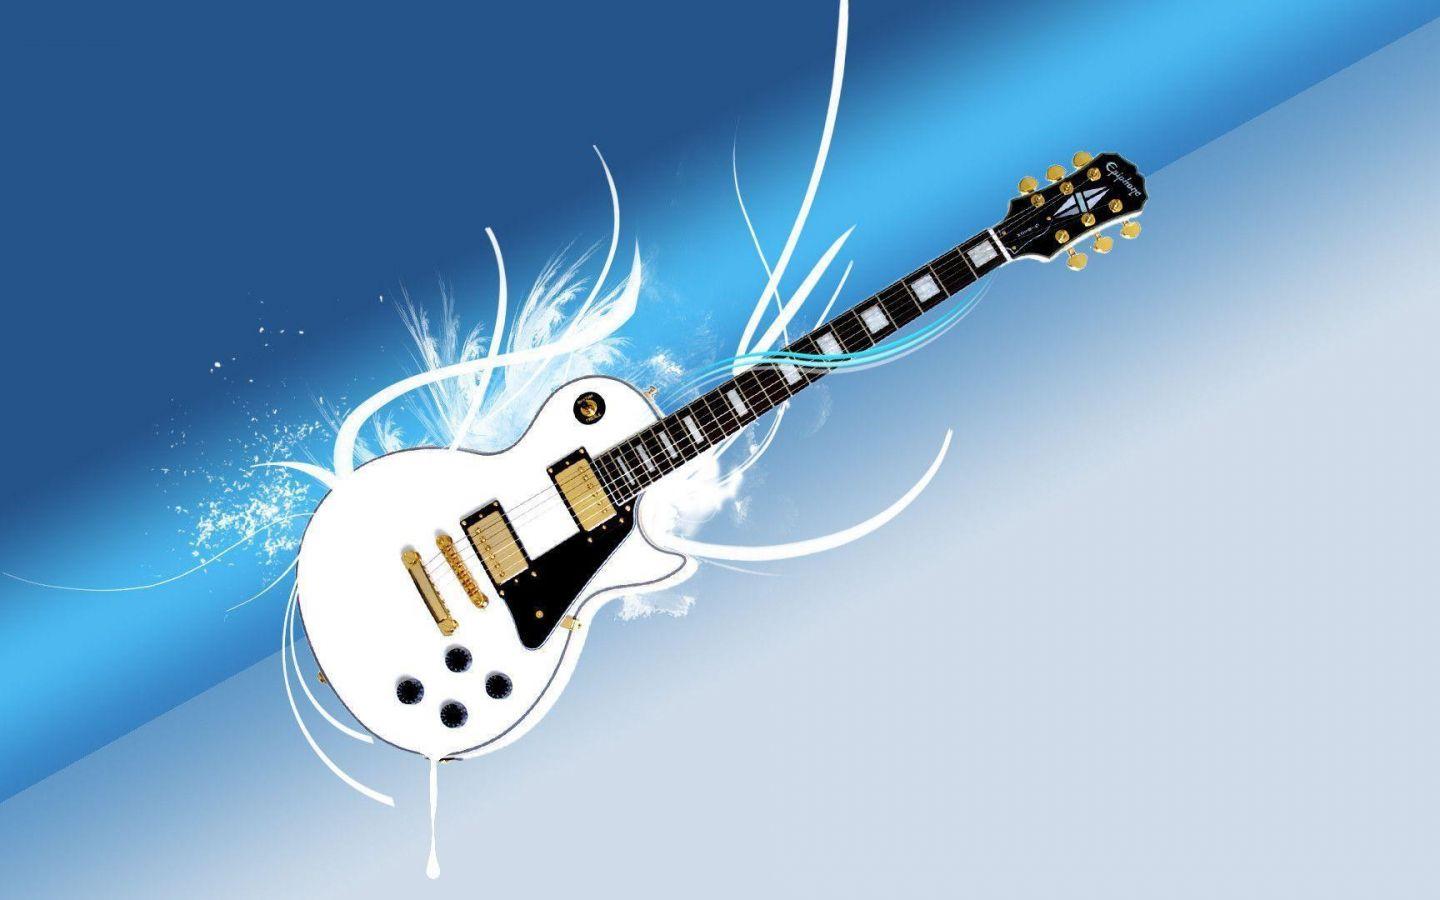 Les Paul Guitar Wallpapers - Top Free Les Paul Guitar Backgrounds ...